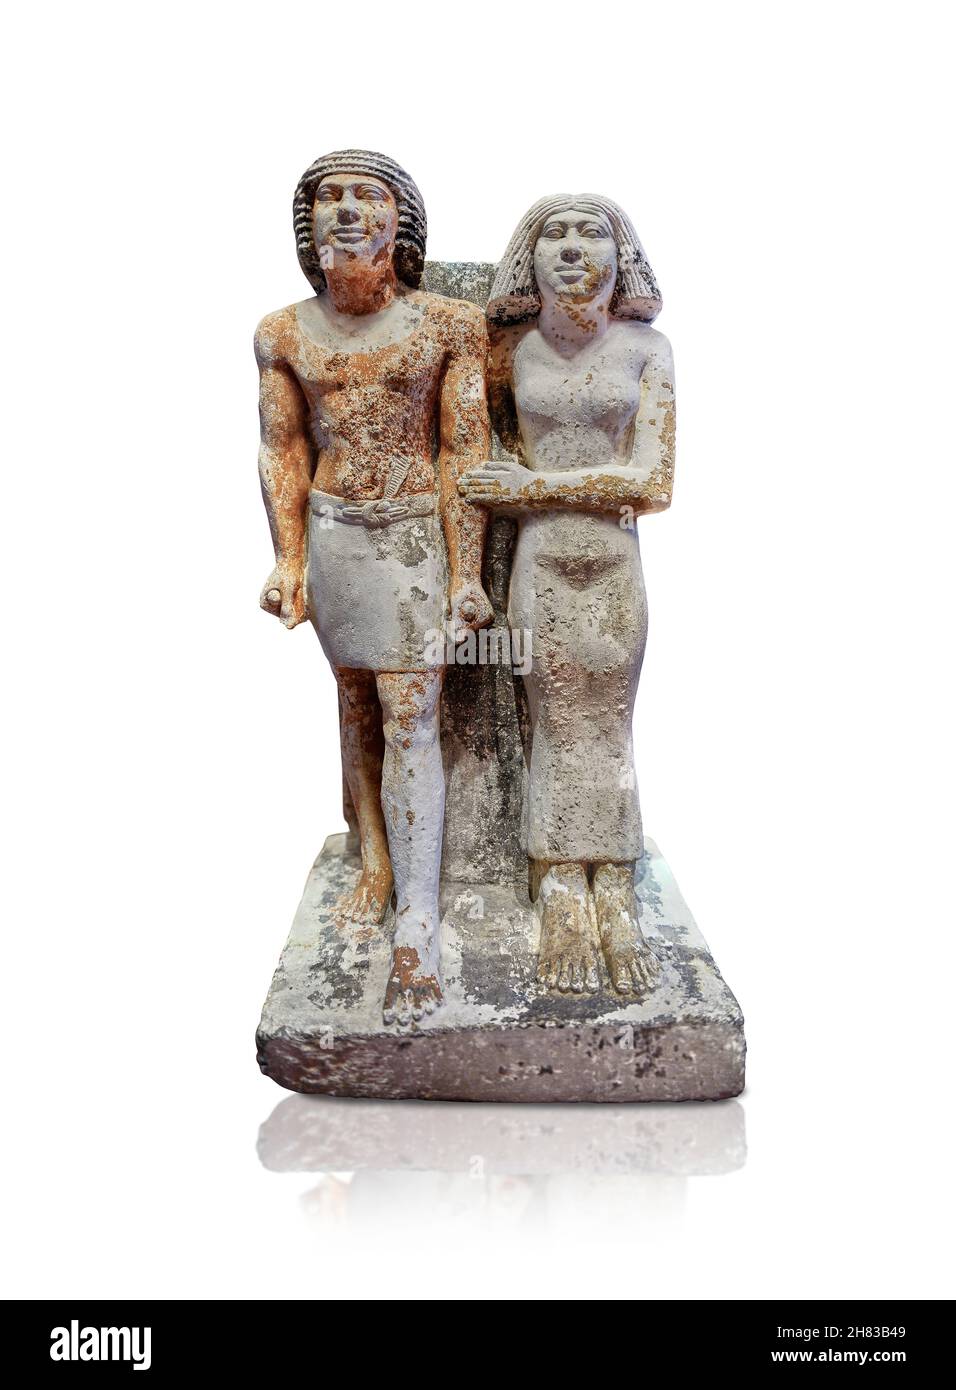 Alte gyptische Statue von Kai-pu-ptah und Ipep, 2400 v. Chr., 5th Dynastie, Gizeh Nekropole. Kunsthistorisches Museum Wien Inv. AS 7444. Kalksteinhöhe Stockfoto